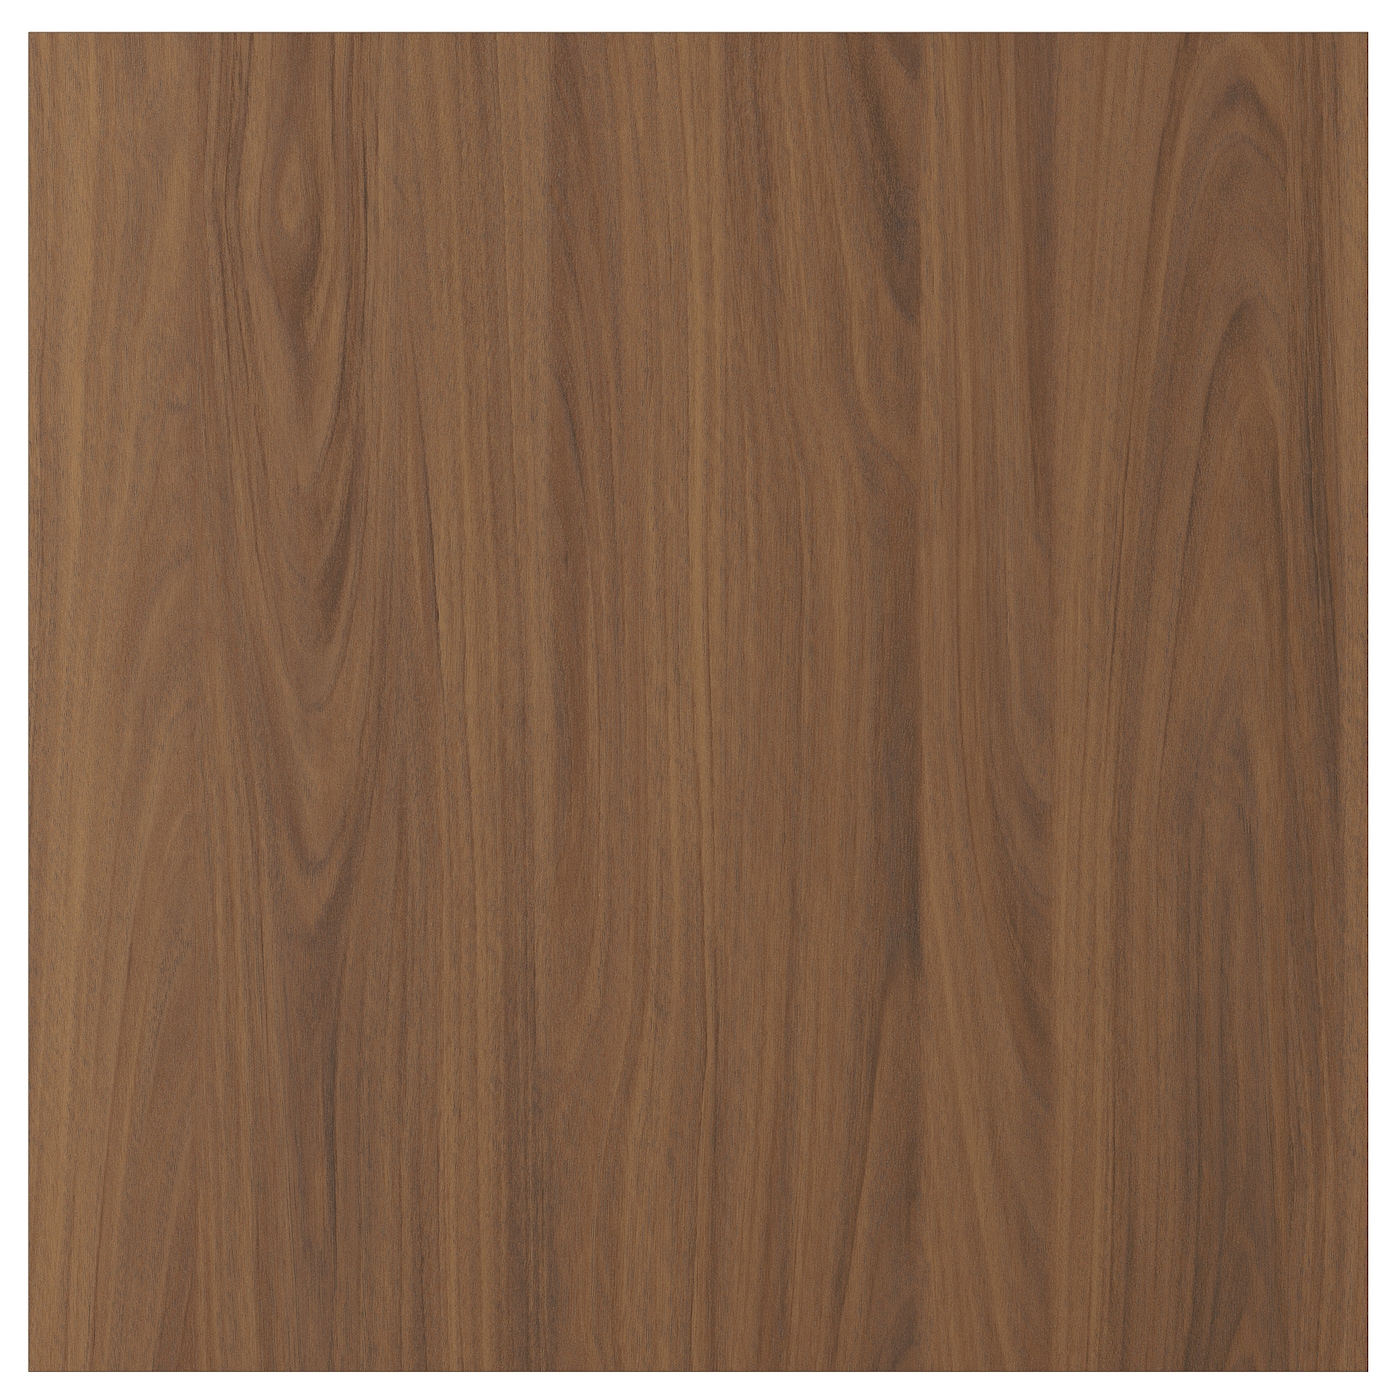 Дверца  - TISTORP IKEA/ ТИСТОРП ИКЕА,  60х60  см, коричневый